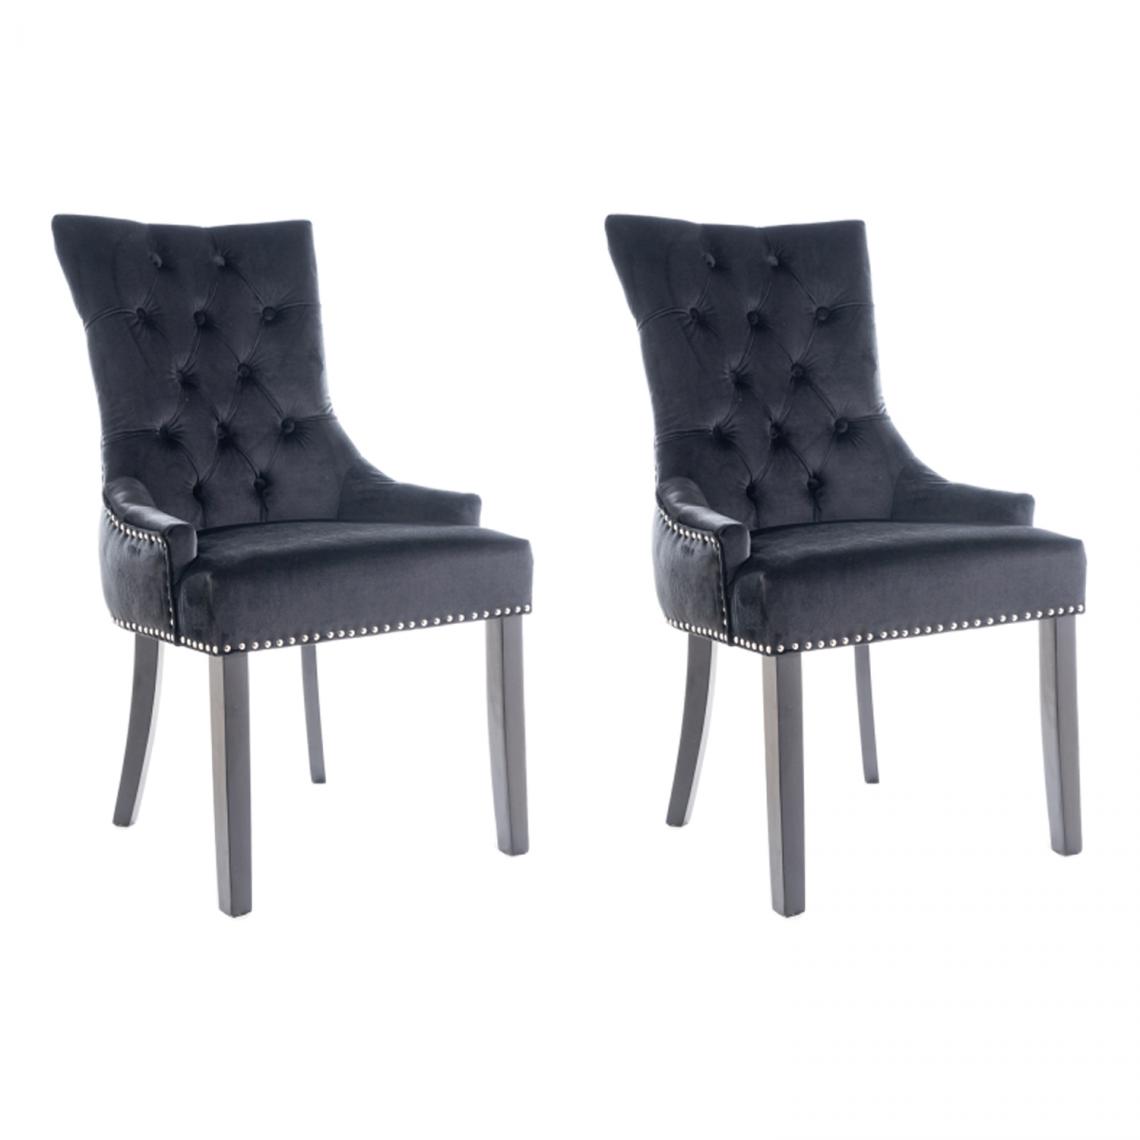 Hucoco - EDWARG - Lot de 2 chaises élégantes - Dimensions 99x55x45 cm - Revêtement en velours - Style glamour - Noir - Chaises